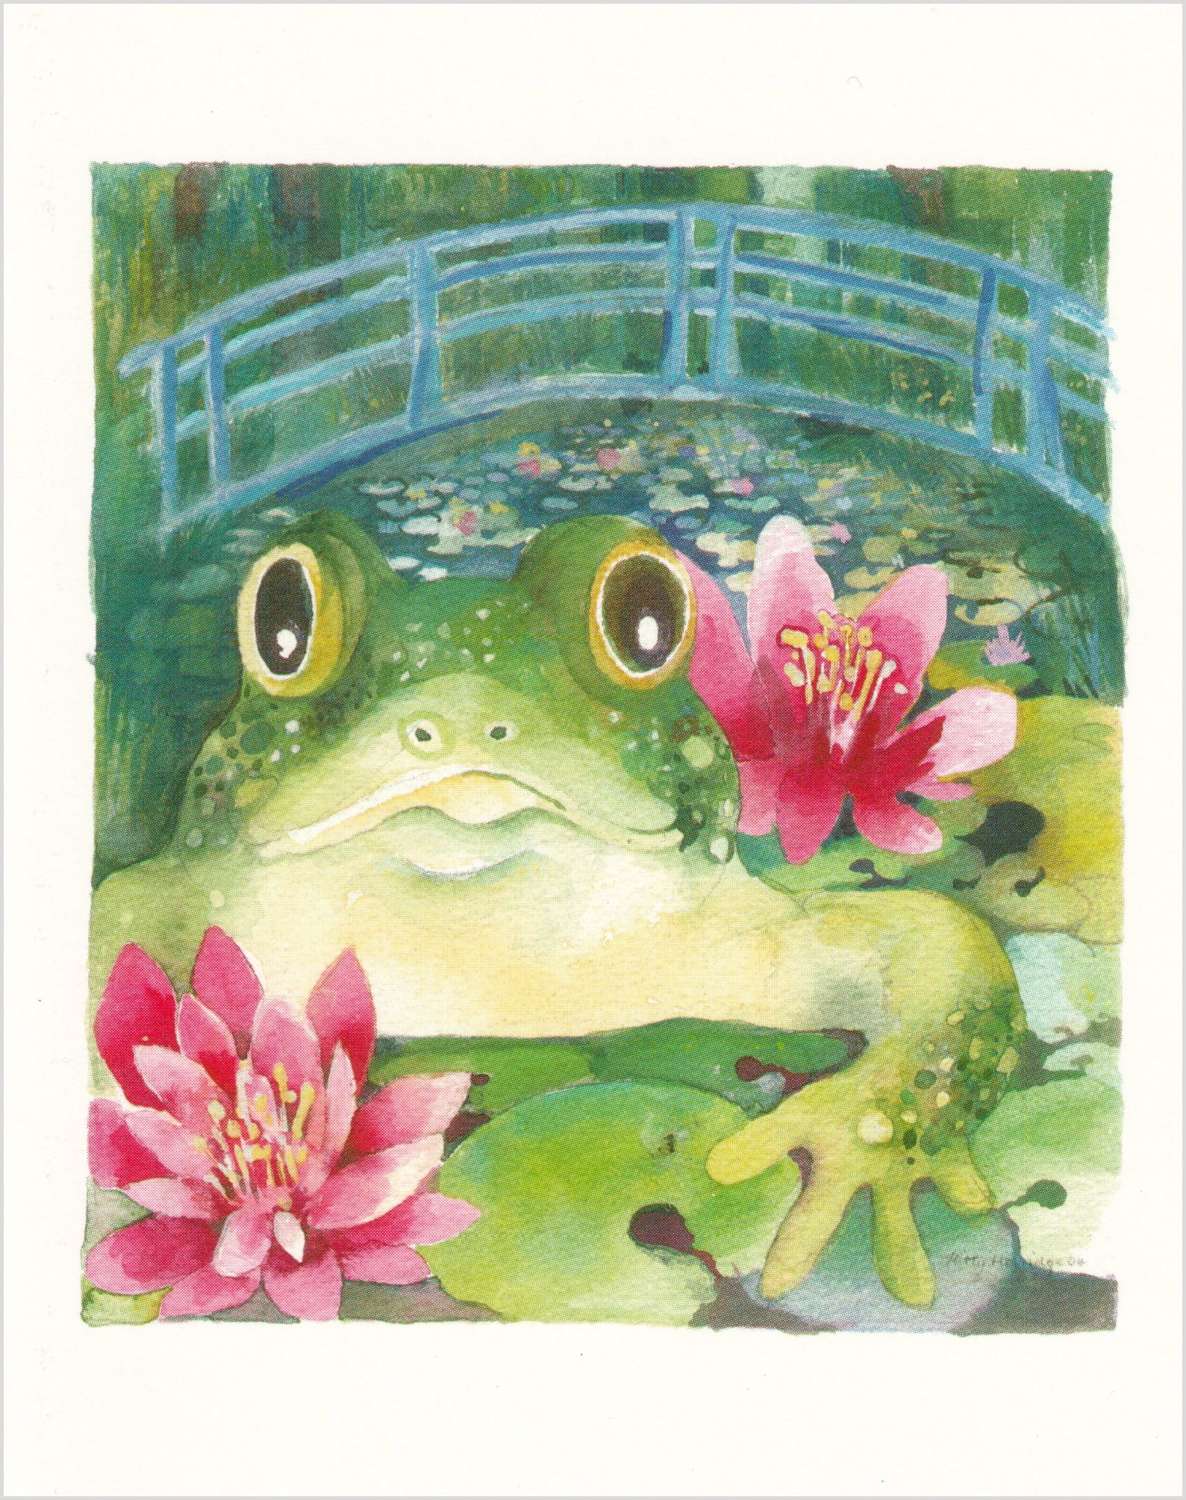 Monet's frog